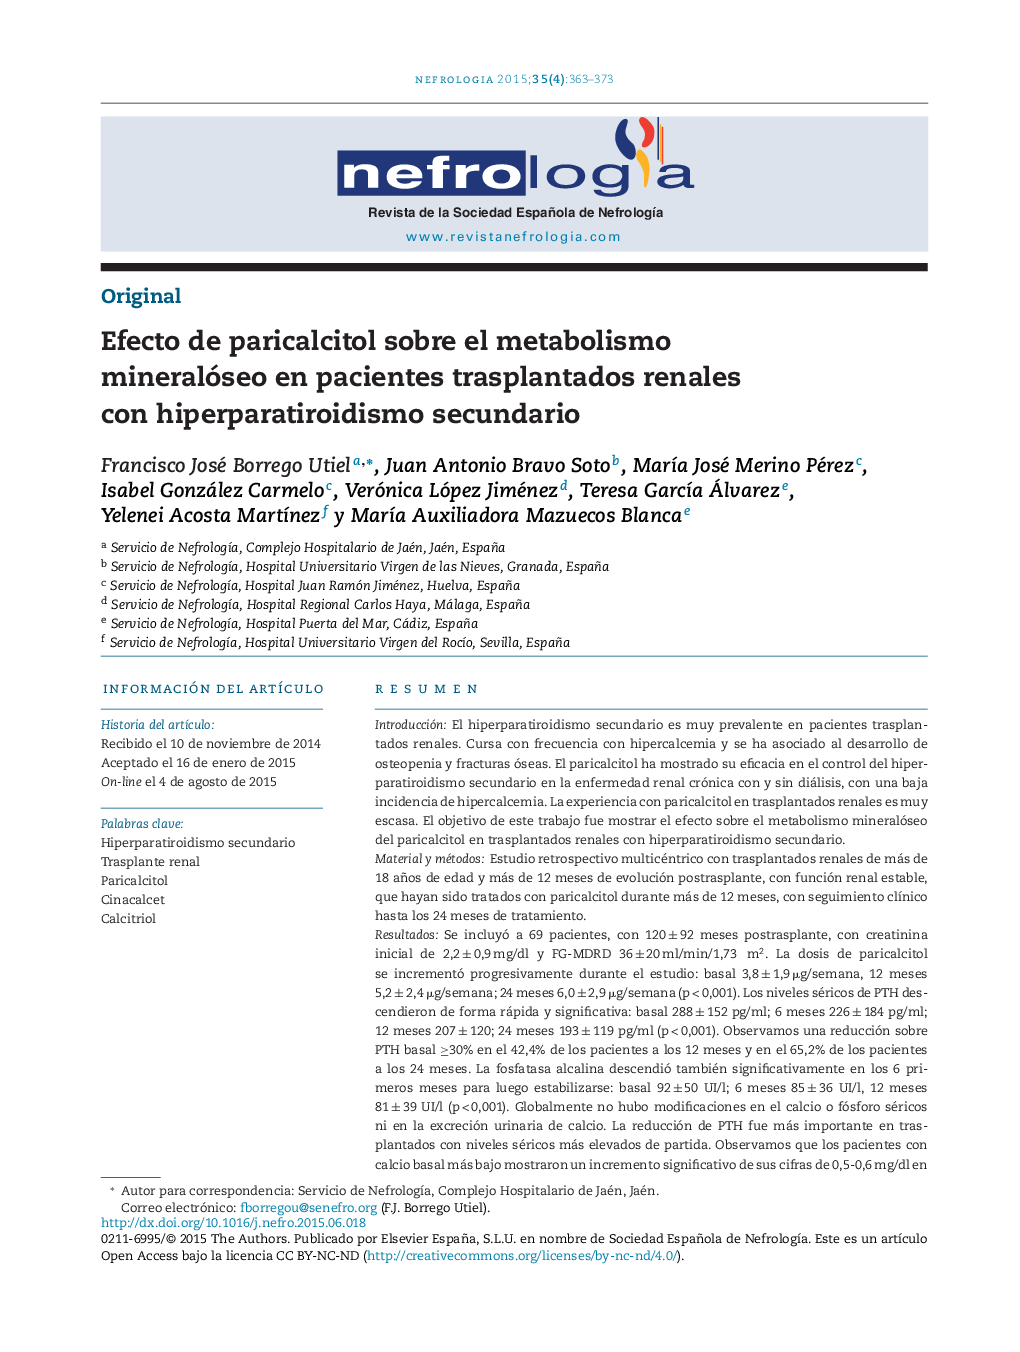 Efecto de paricalcitol sobre el metabolismo mineralóseo en pacientes trasplantados renales con hiperparatiroidismo secundario